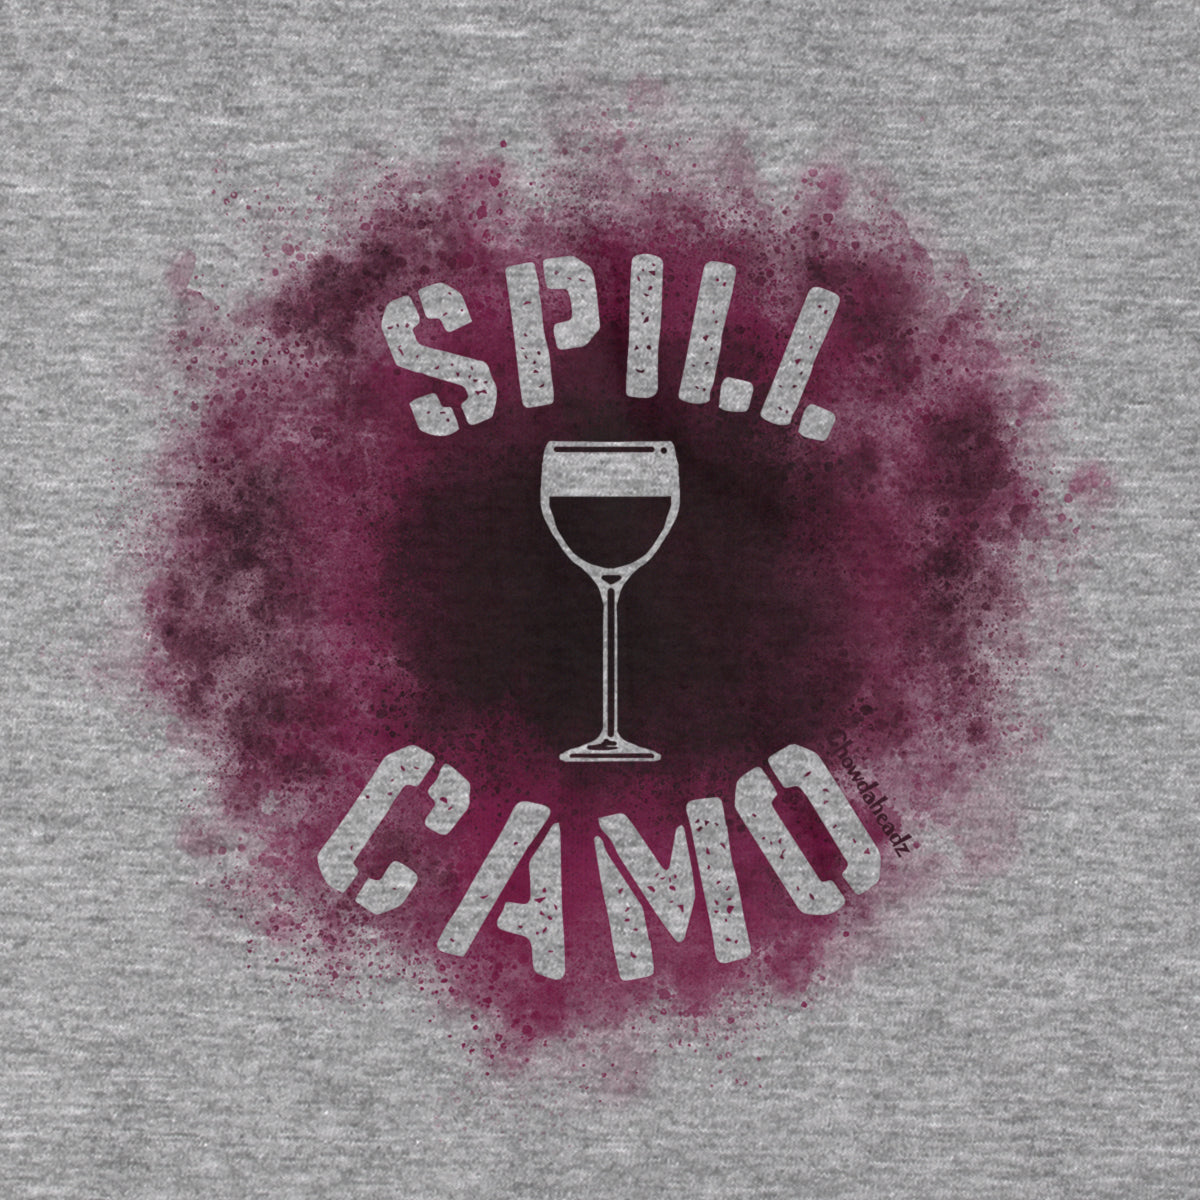 Spill Camo T-Shirt - Chowdaheadz